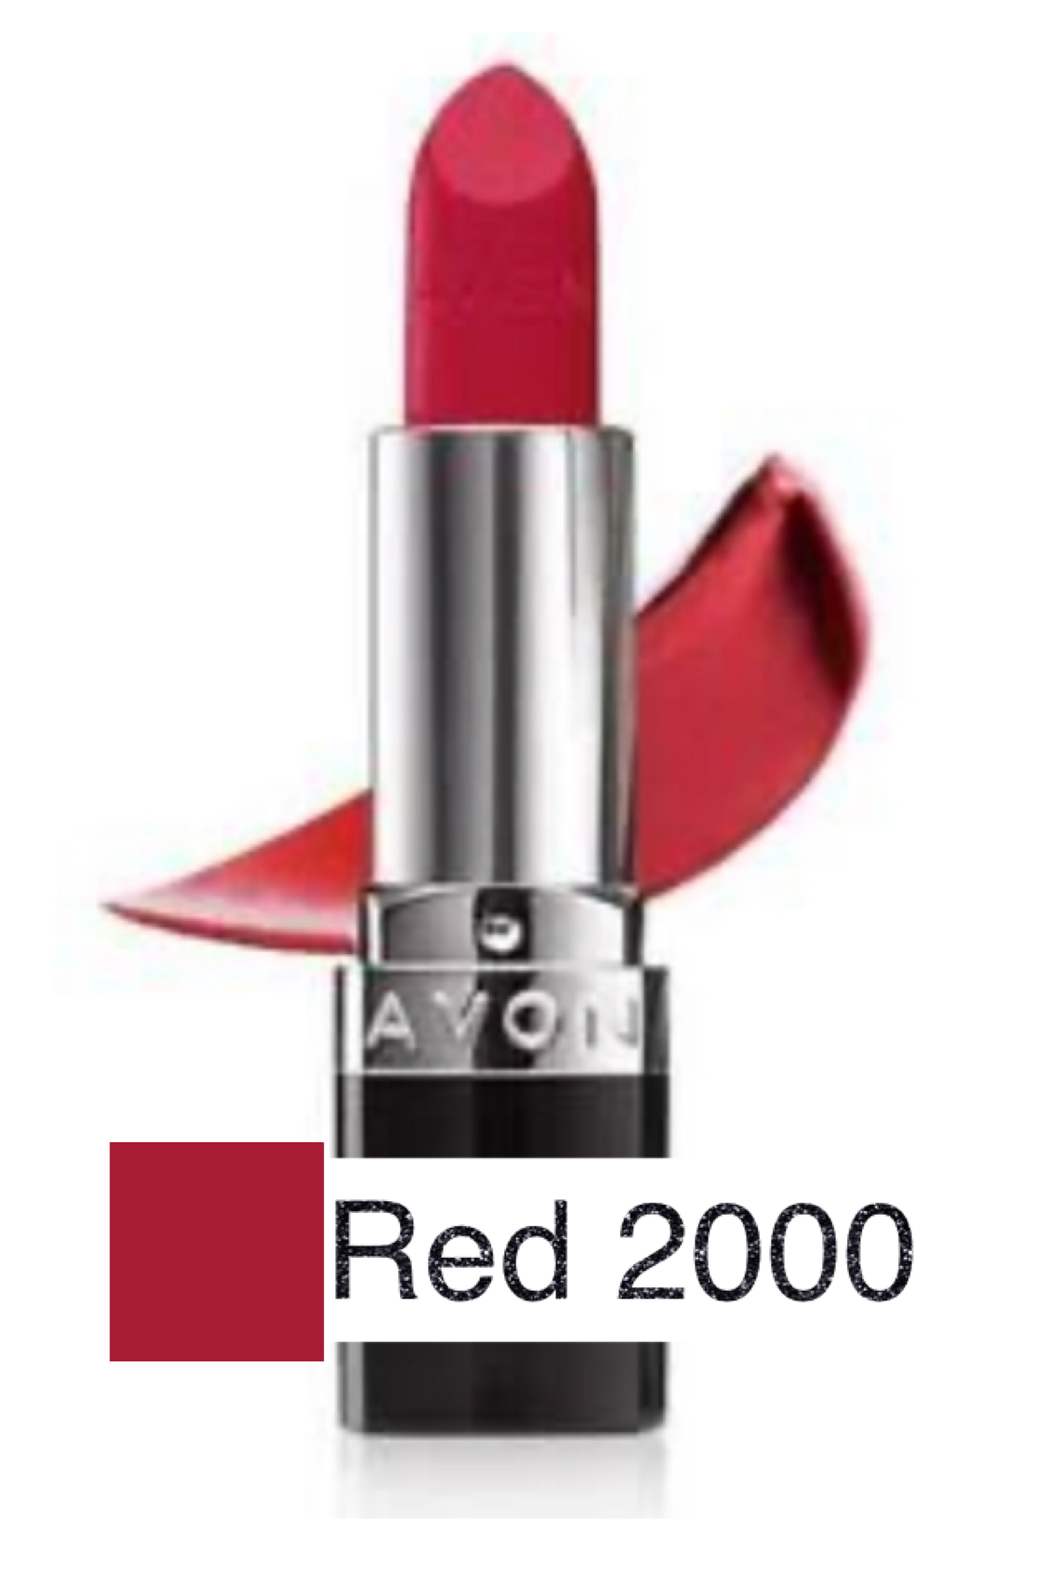 Red 2000 True Color Lipstick